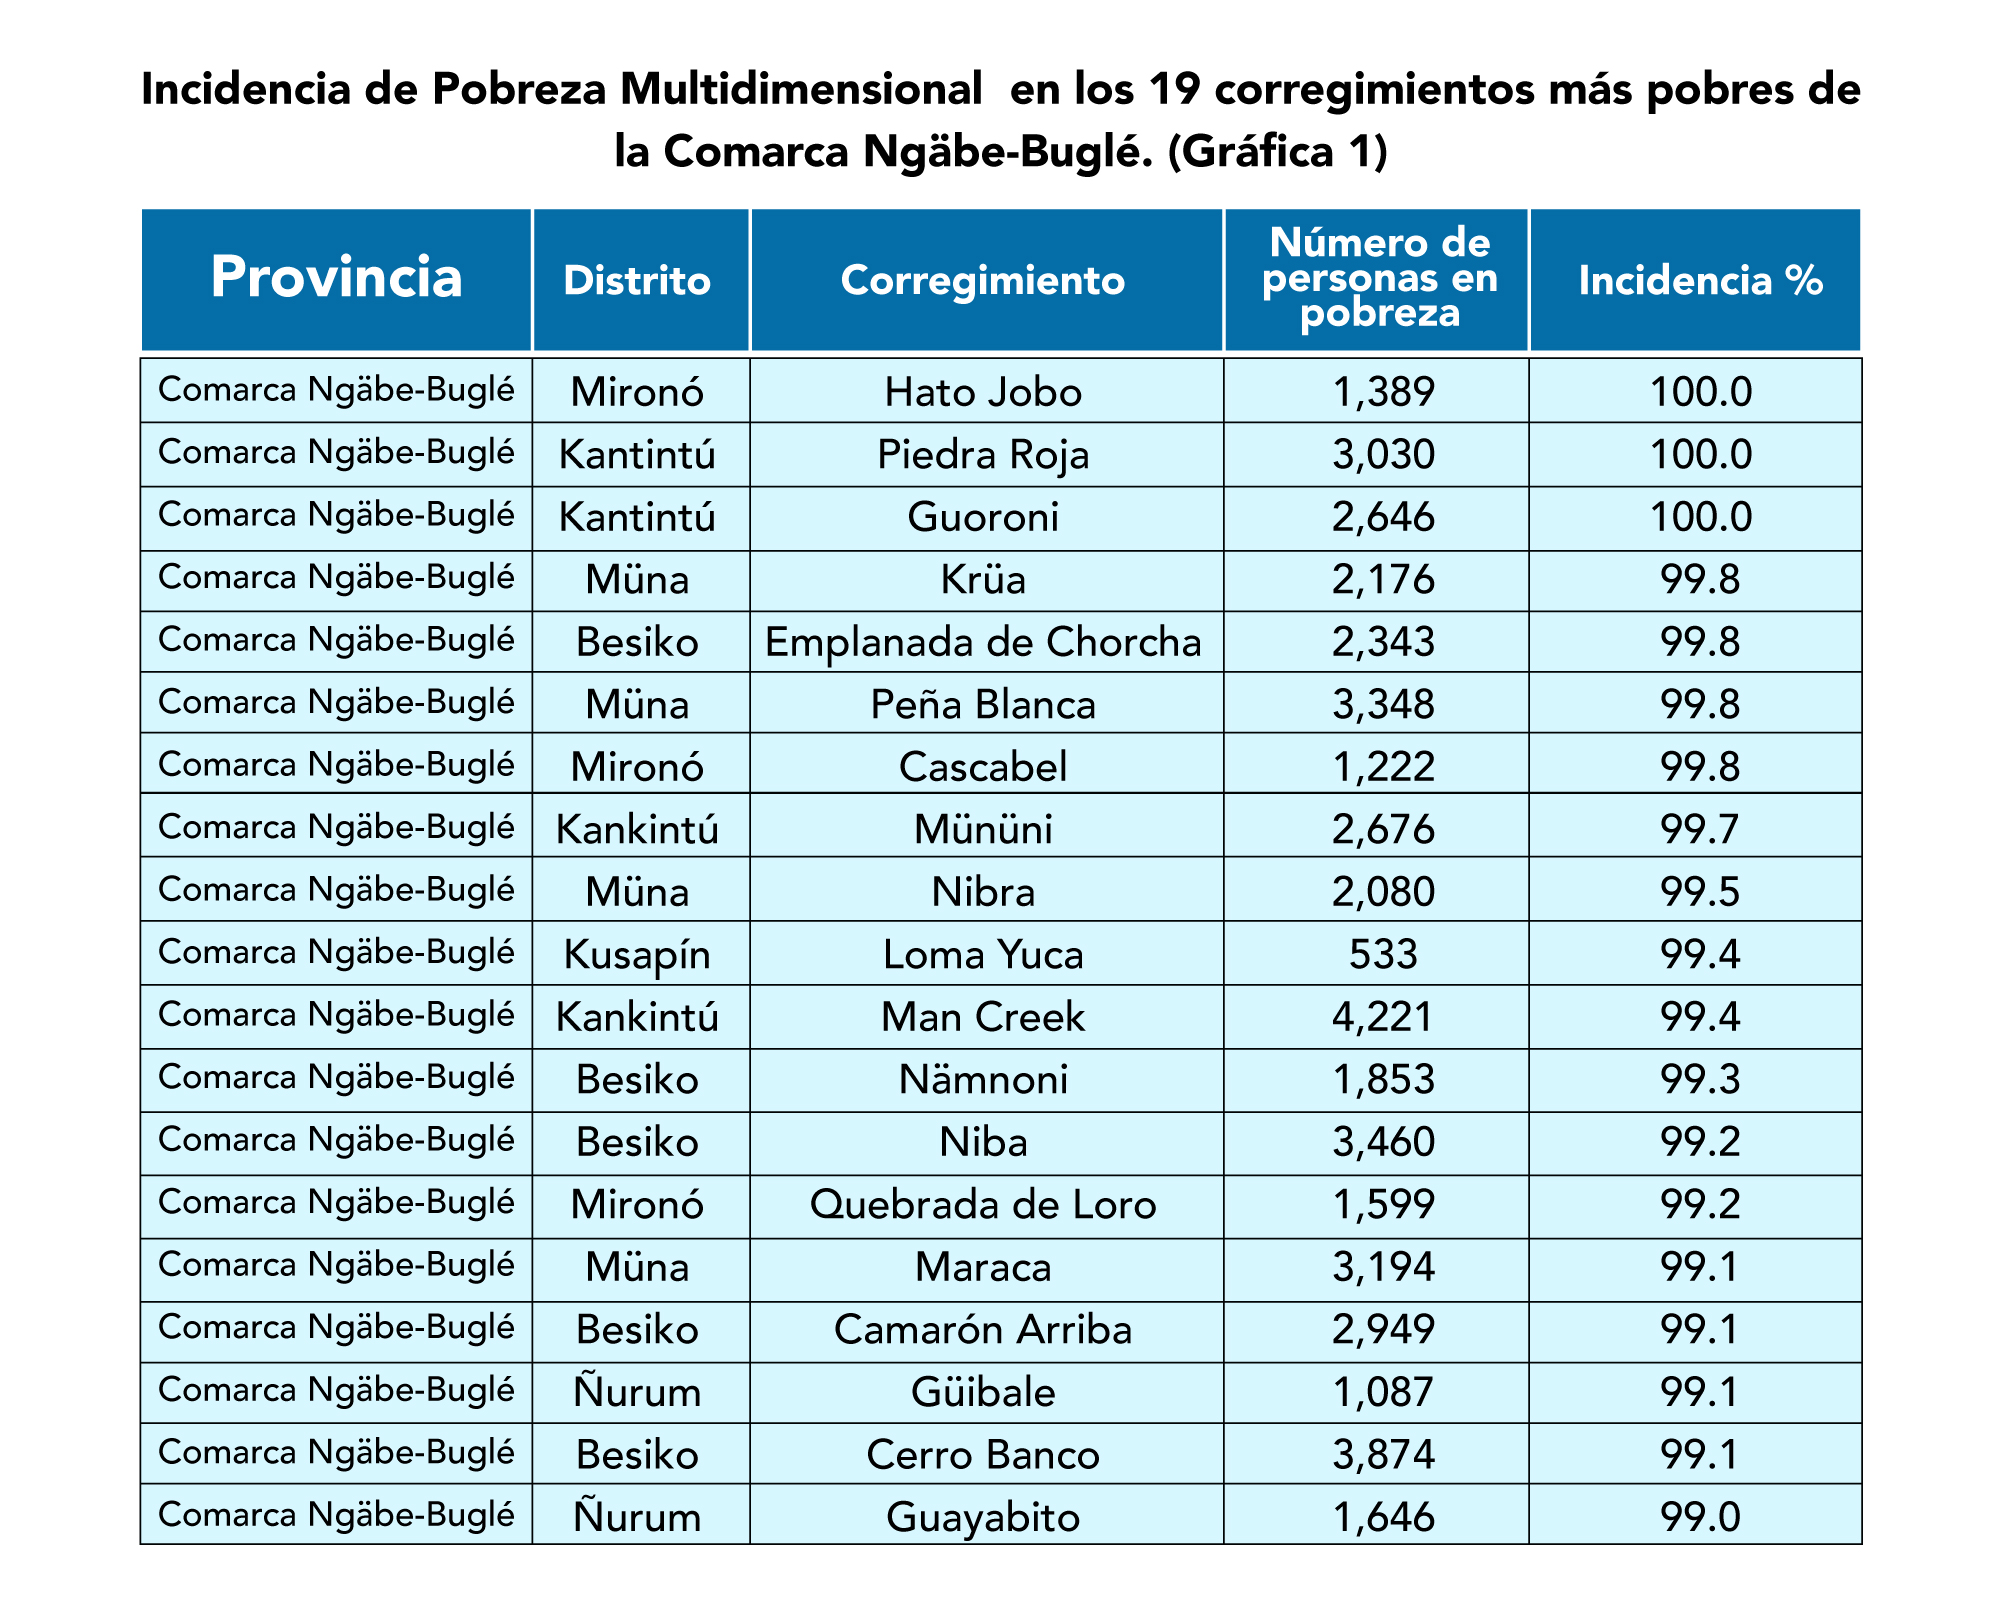 ¿Cuál es la provincia menos poblada de Panamá